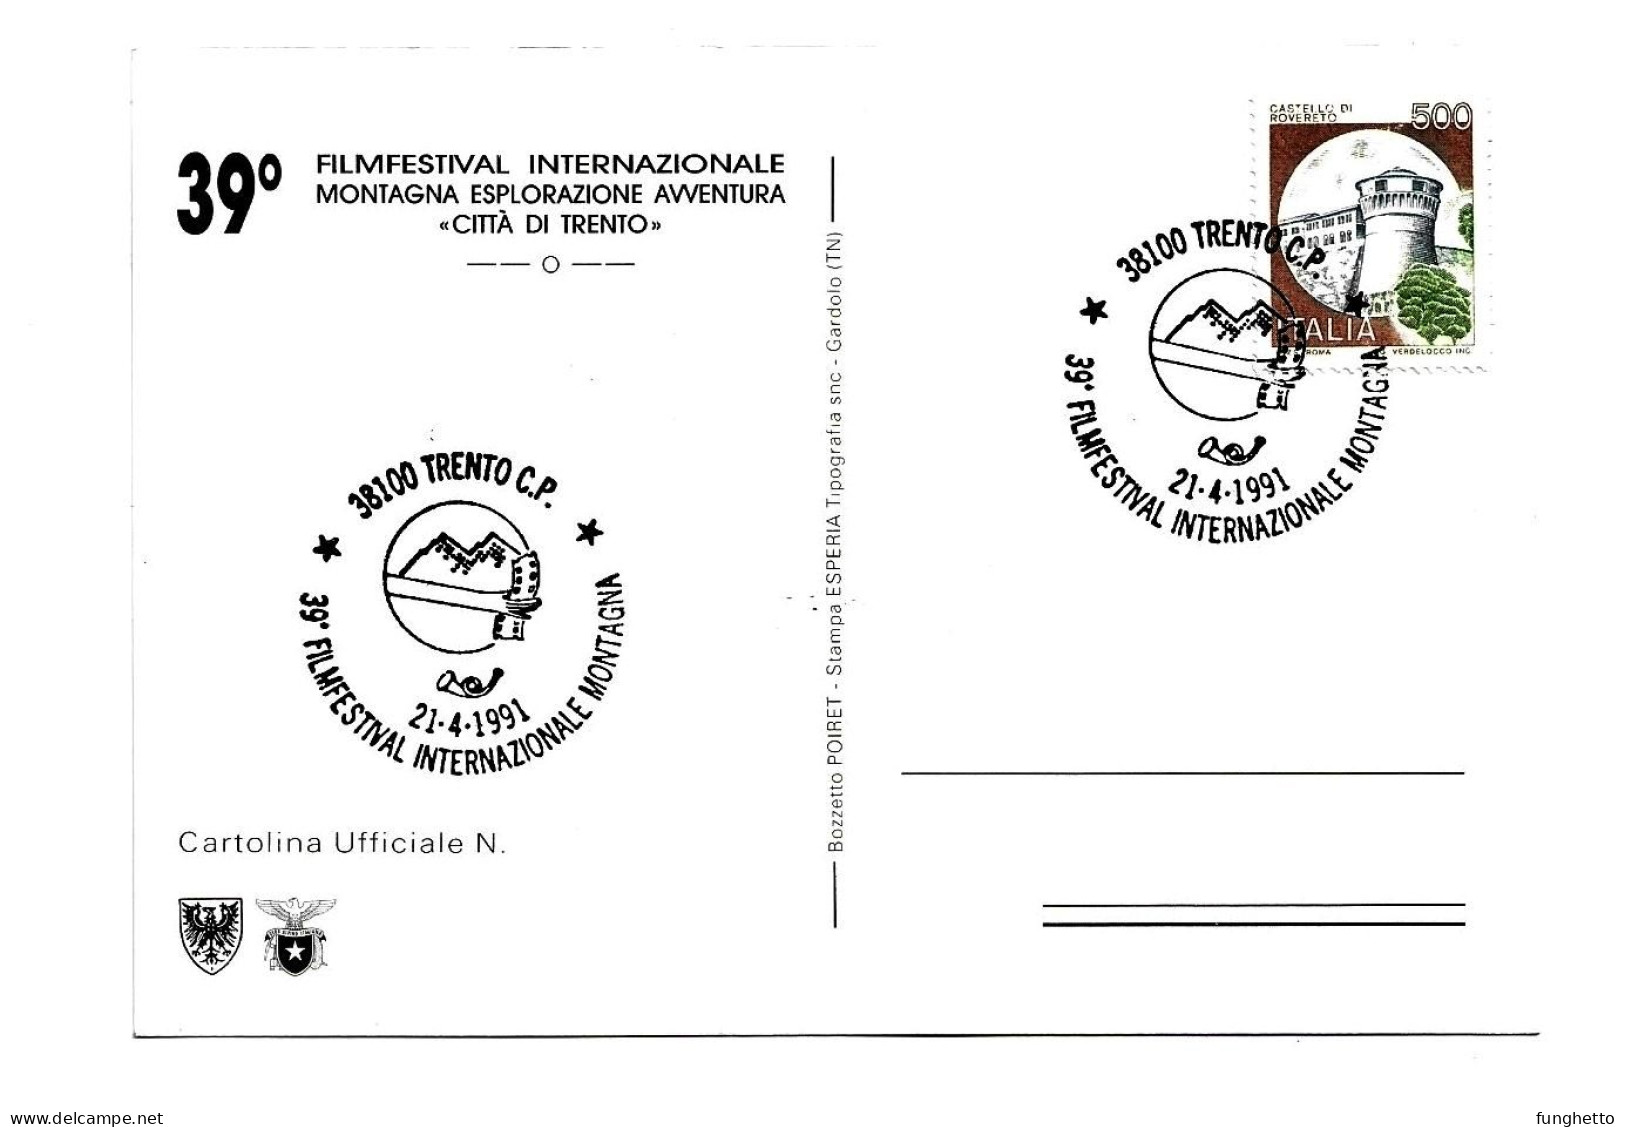 Set 4 cartoline con annullo speciale TRENTO FILM FESTIVAL MONTAGNA 1973-1984-1988-1991